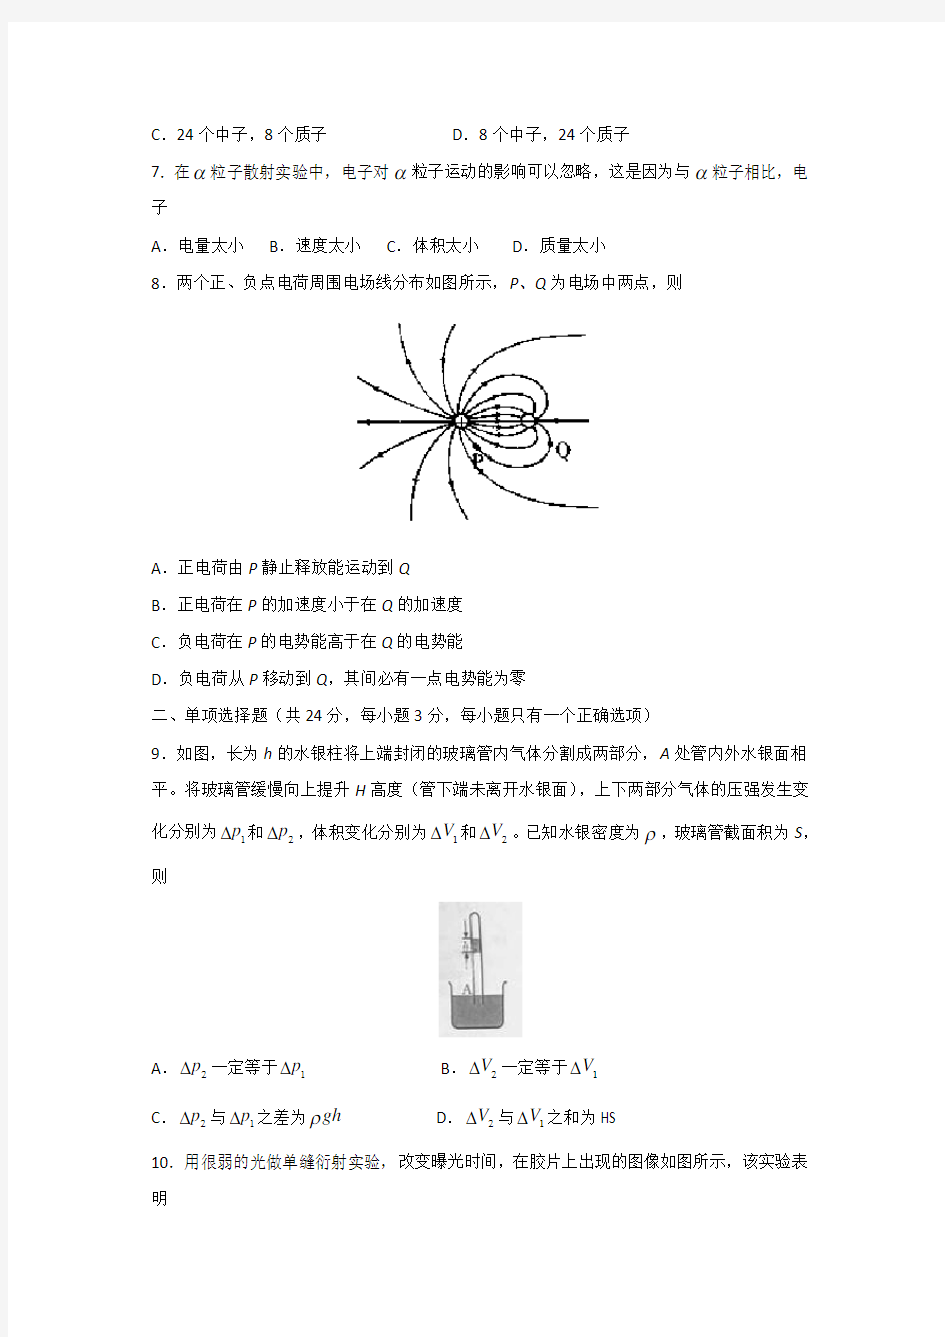 2015年高考真题——物理(上海卷)Word版含答案